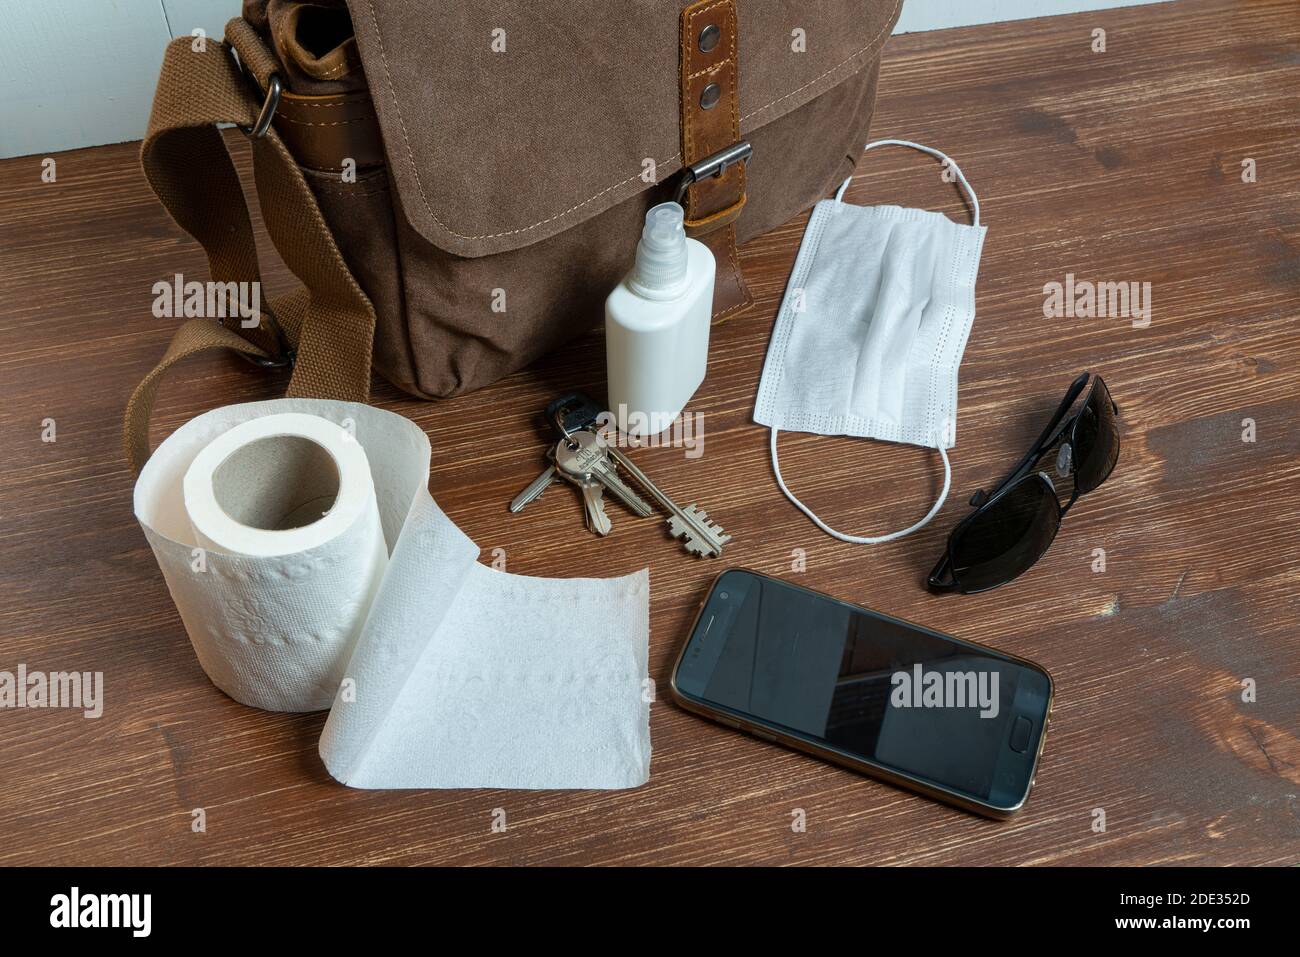 un sac et quelques objets et un rouleau de toilettes papier sur une table en bois Banque D'Images